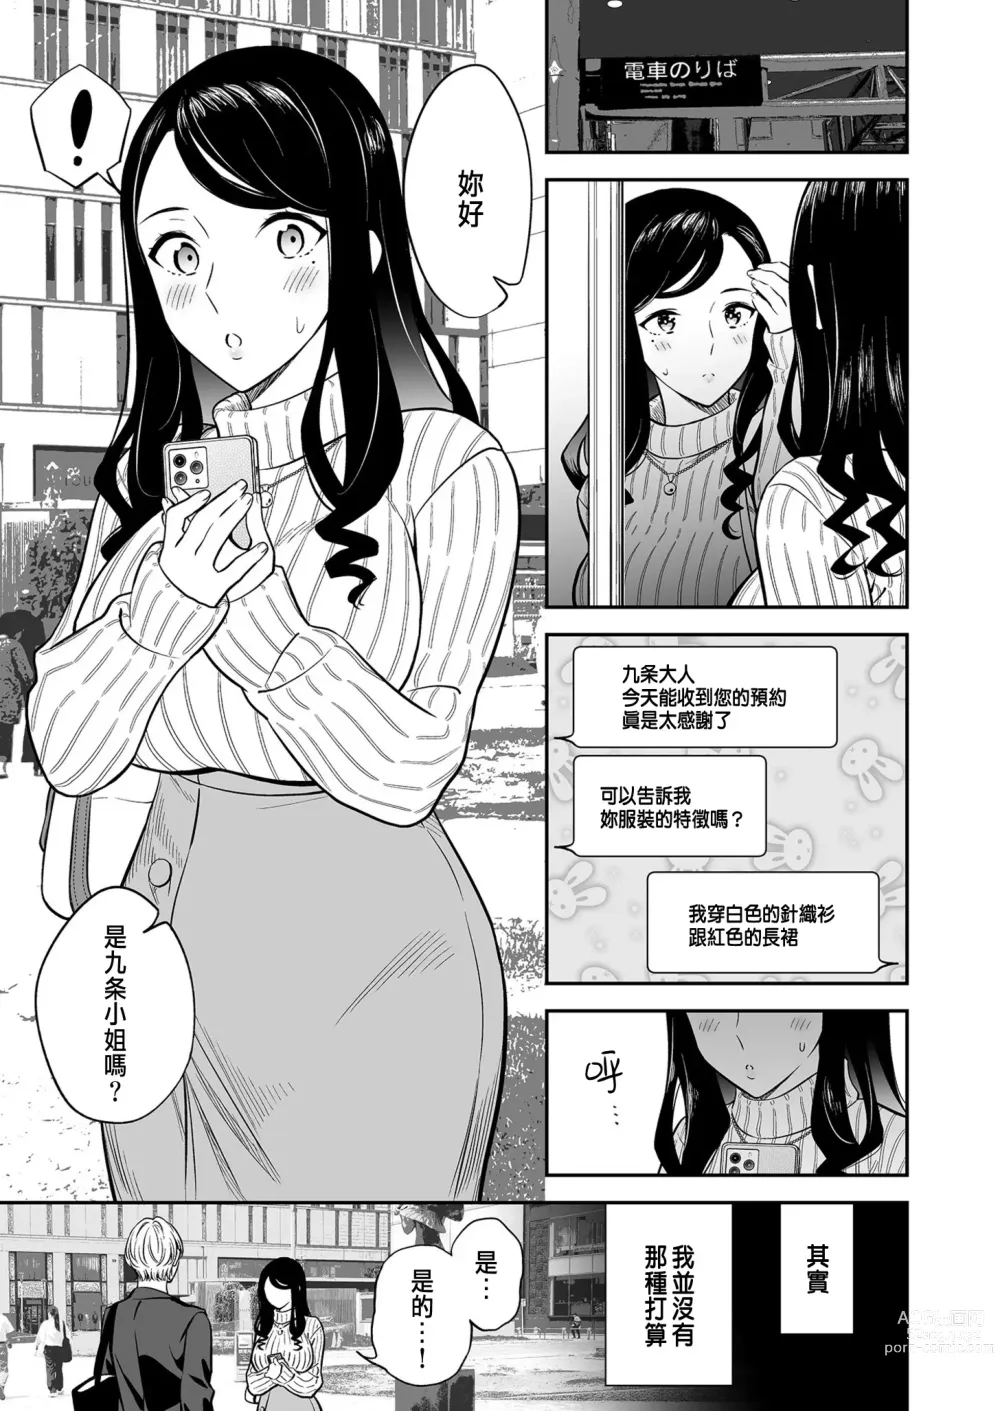 Page 3 of manga Suki nano wa Anata dake... 1